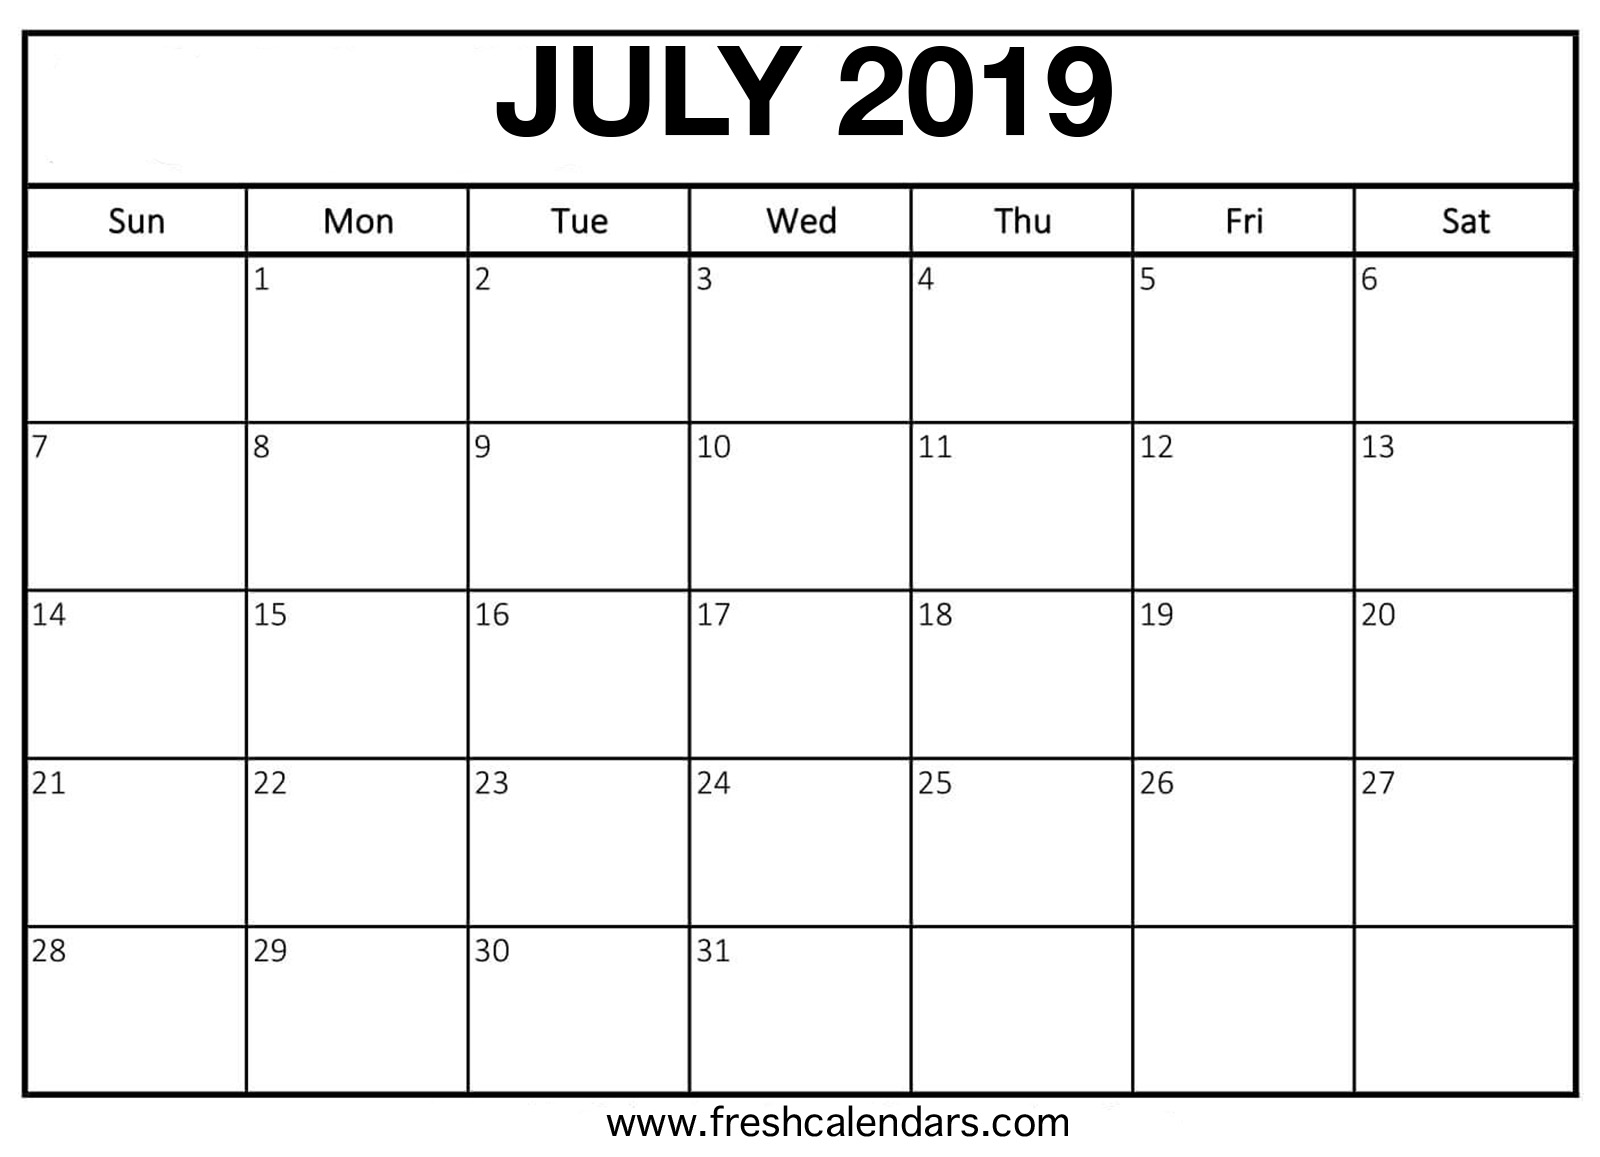 July 2019 Calendar Online